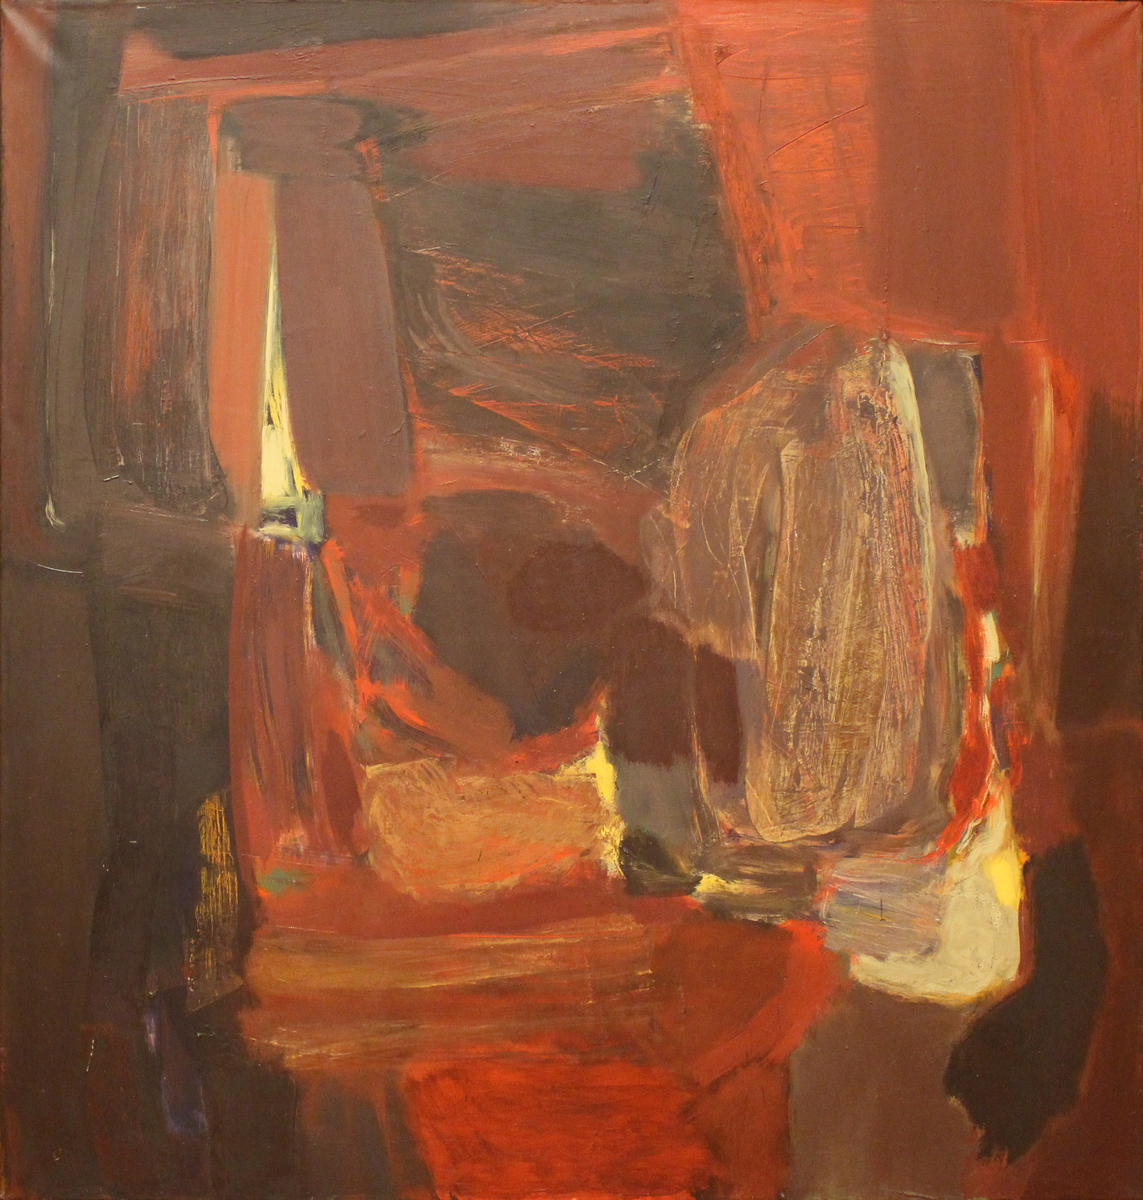 Abstrakt maleri i røde og brune toner